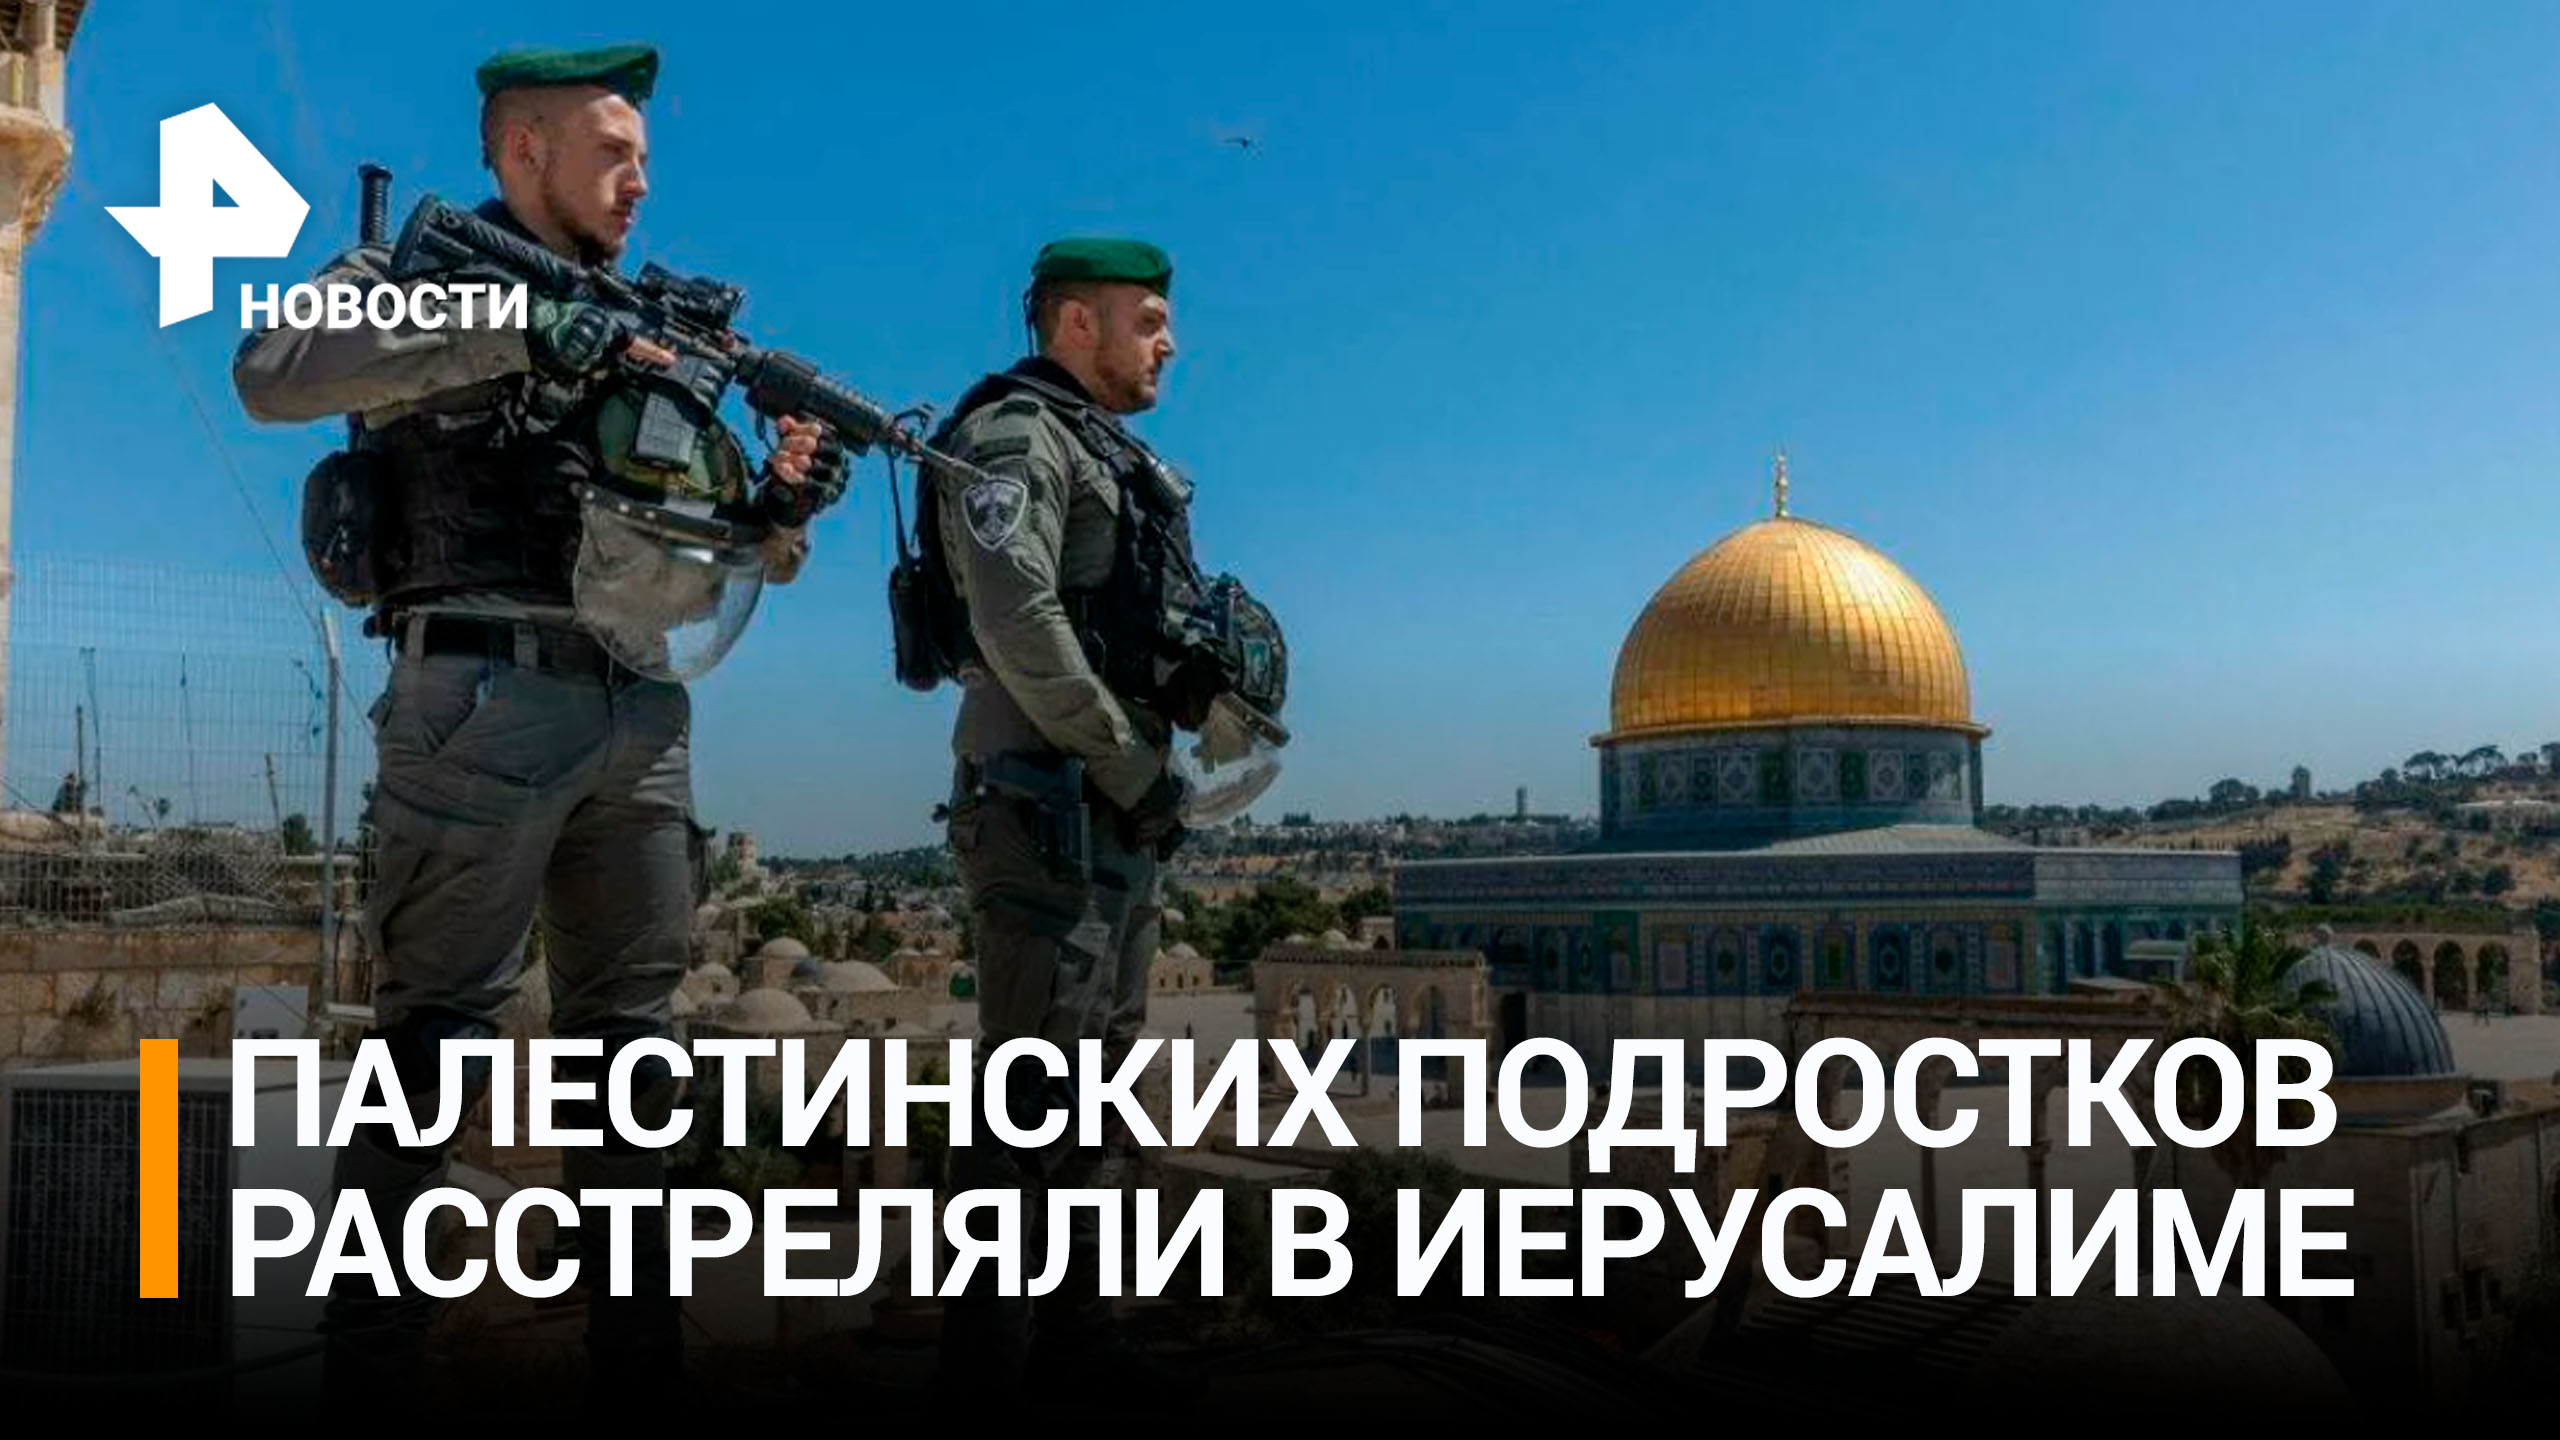 В Иерусалиме полицейские расстреляли палестинцев, пускавших фейерверки / РЕН Новости